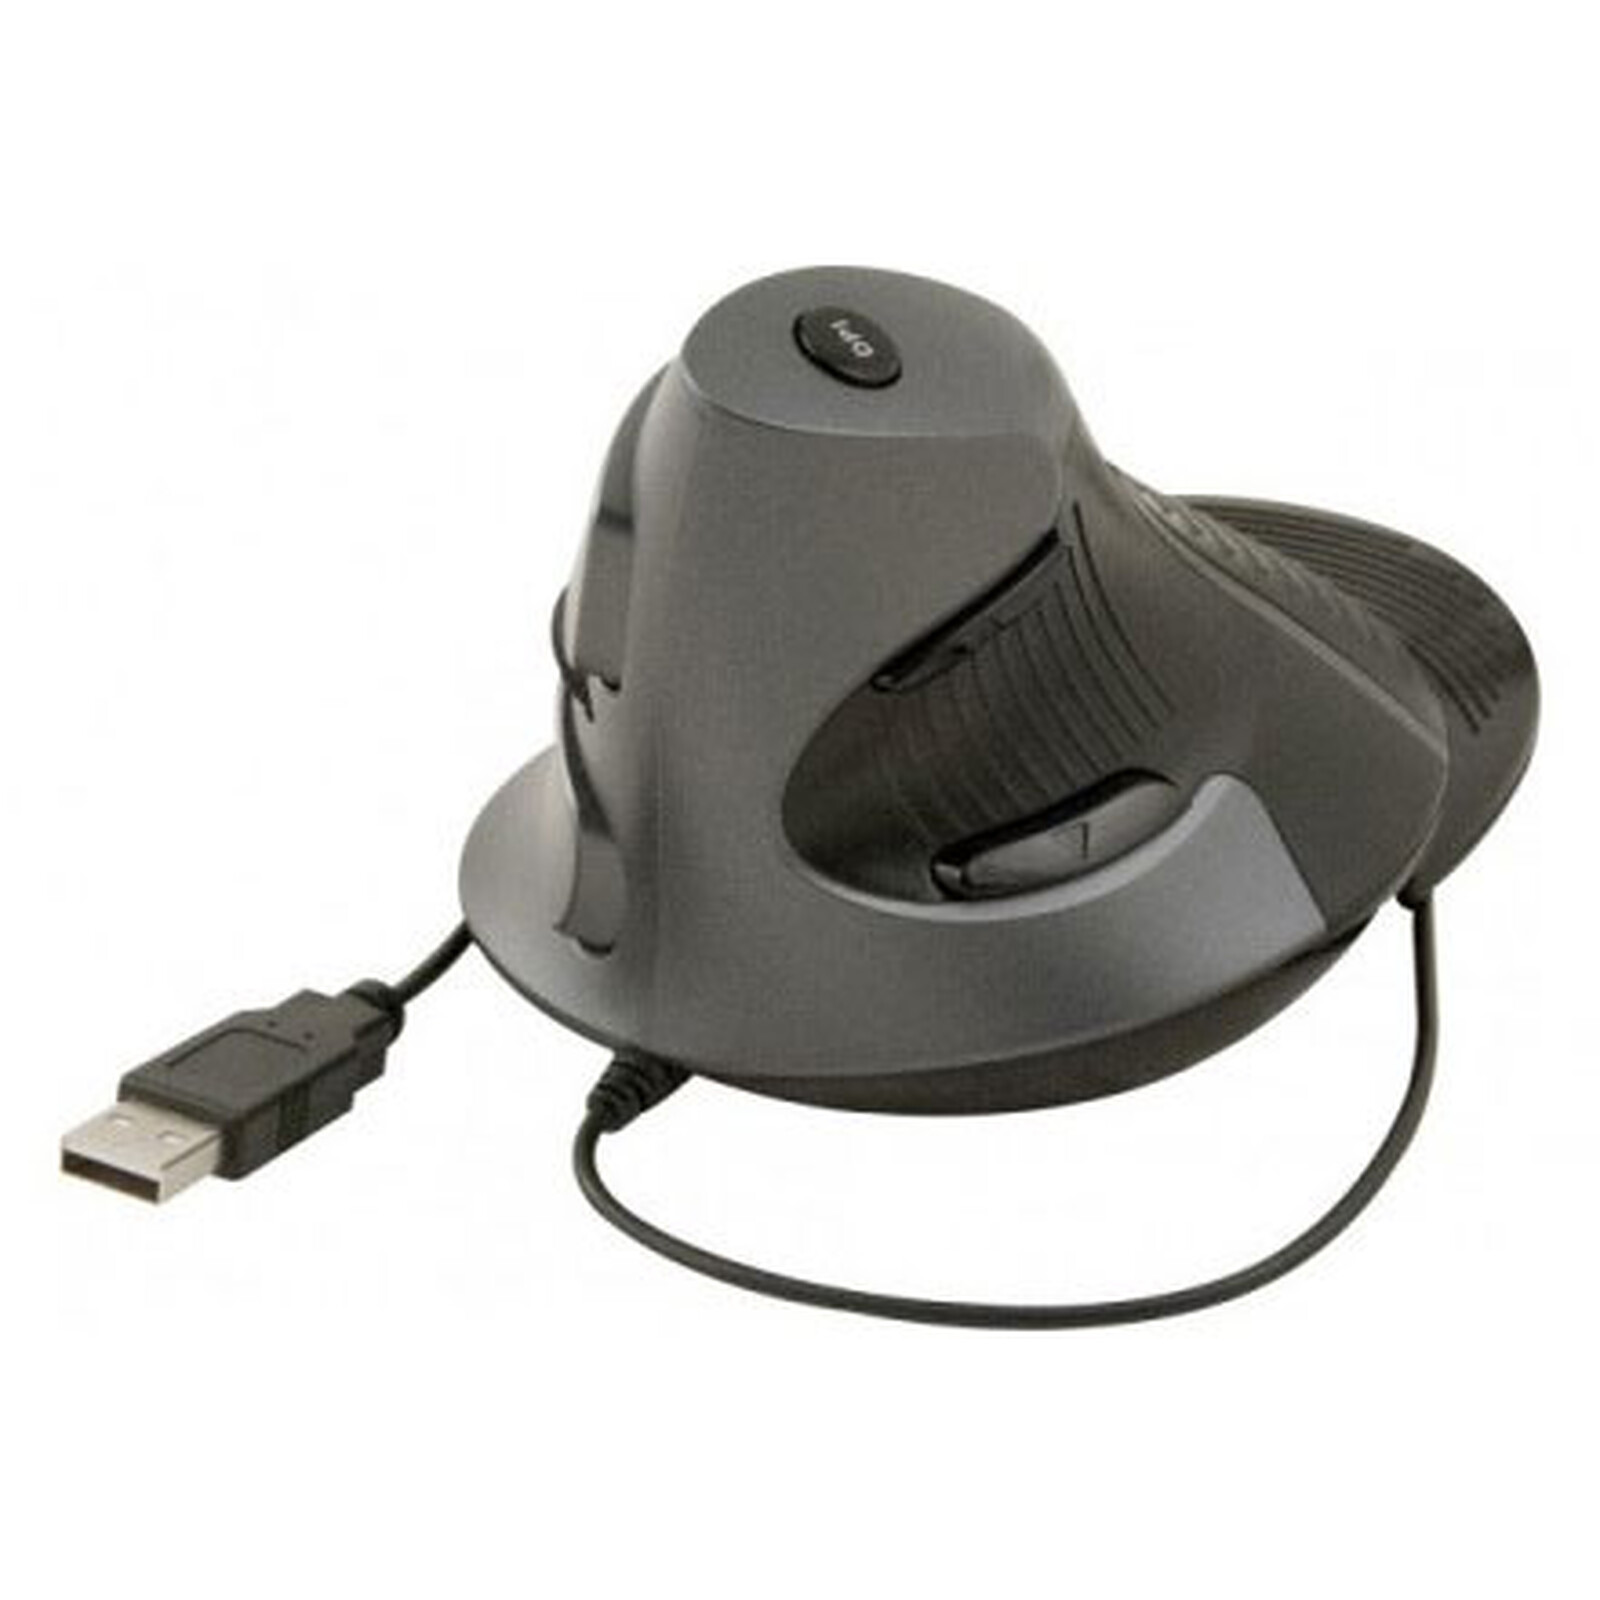 Souris ergonomique verticale USB (noire) - Souris PC - Garantie 3